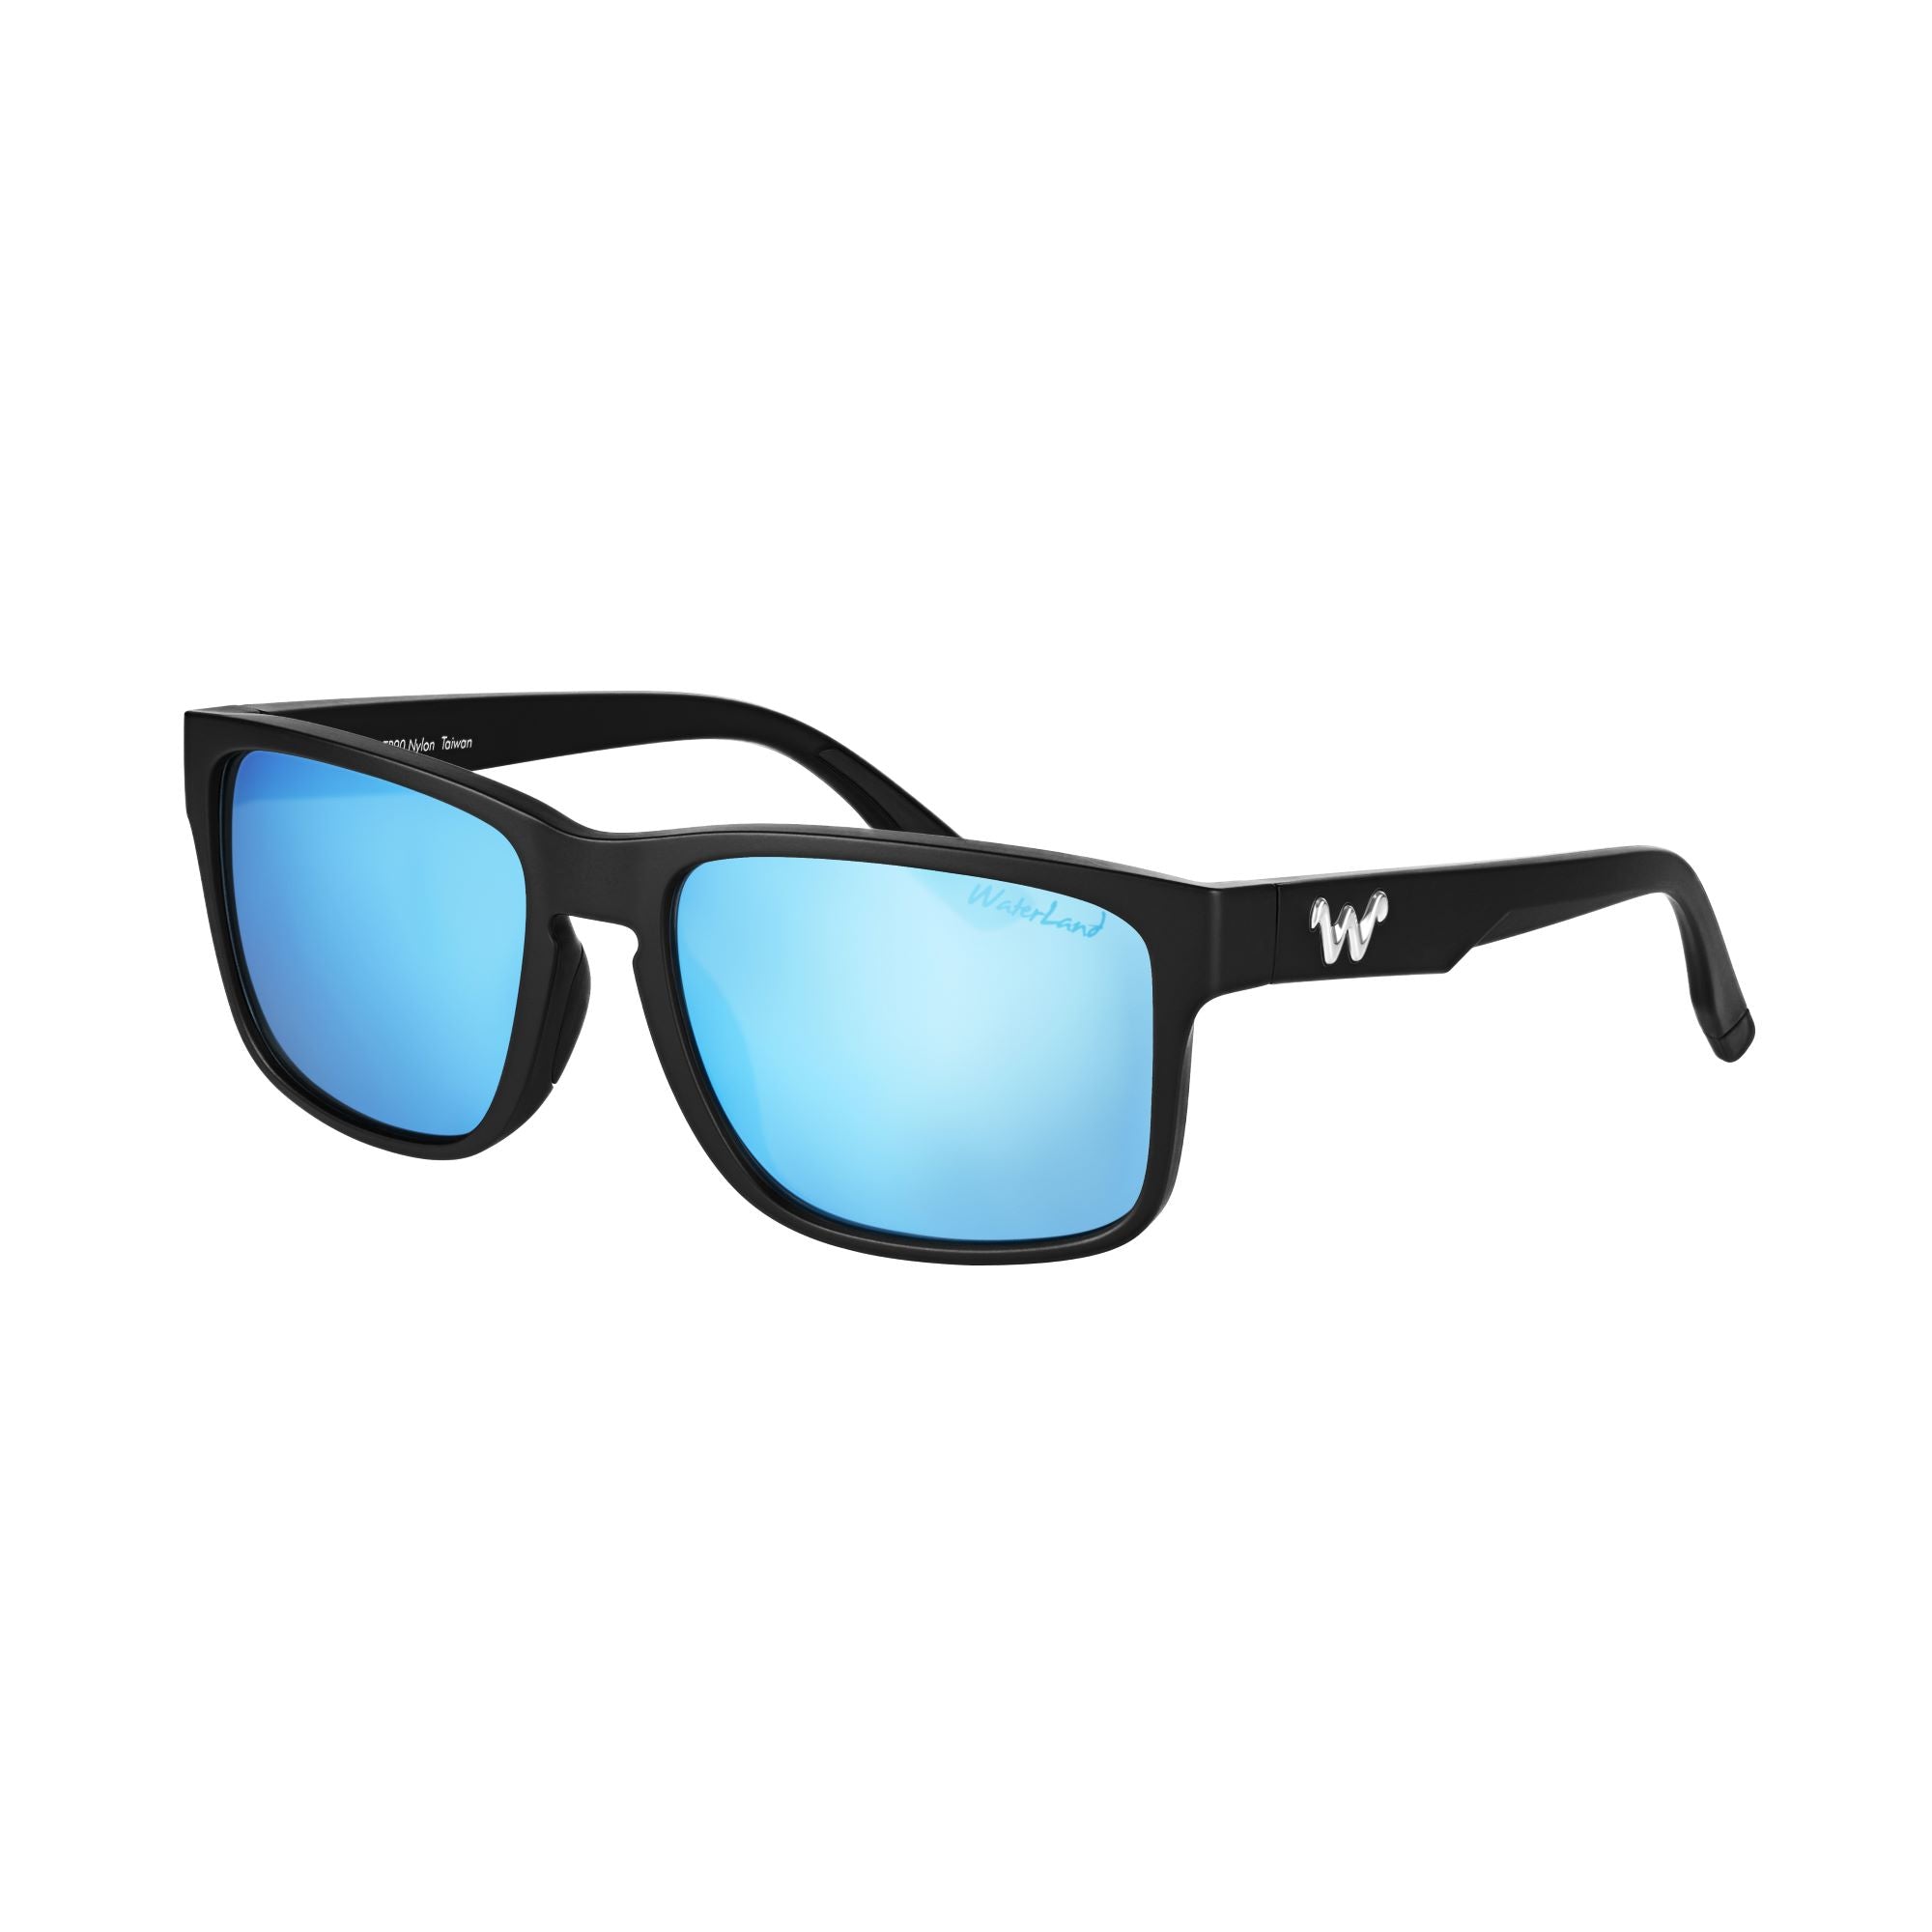 WaterLand Polarized Sunglasses - Sobro Prescription Series